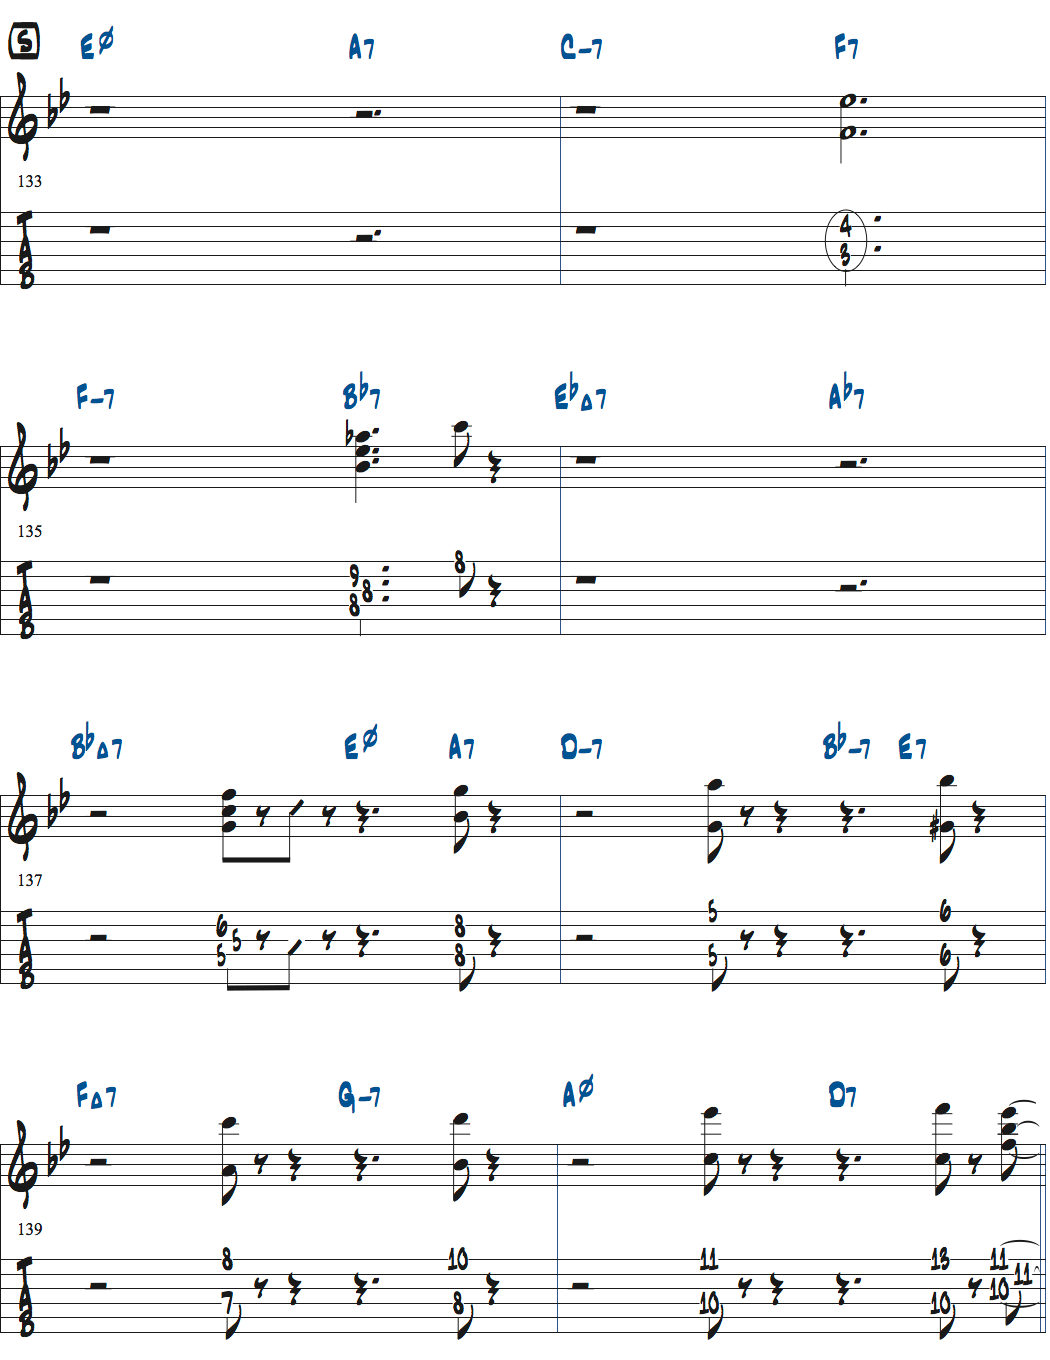 ジョナサン・クライスバーグの星影のステラベースソロのコンピング楽譜ページ3